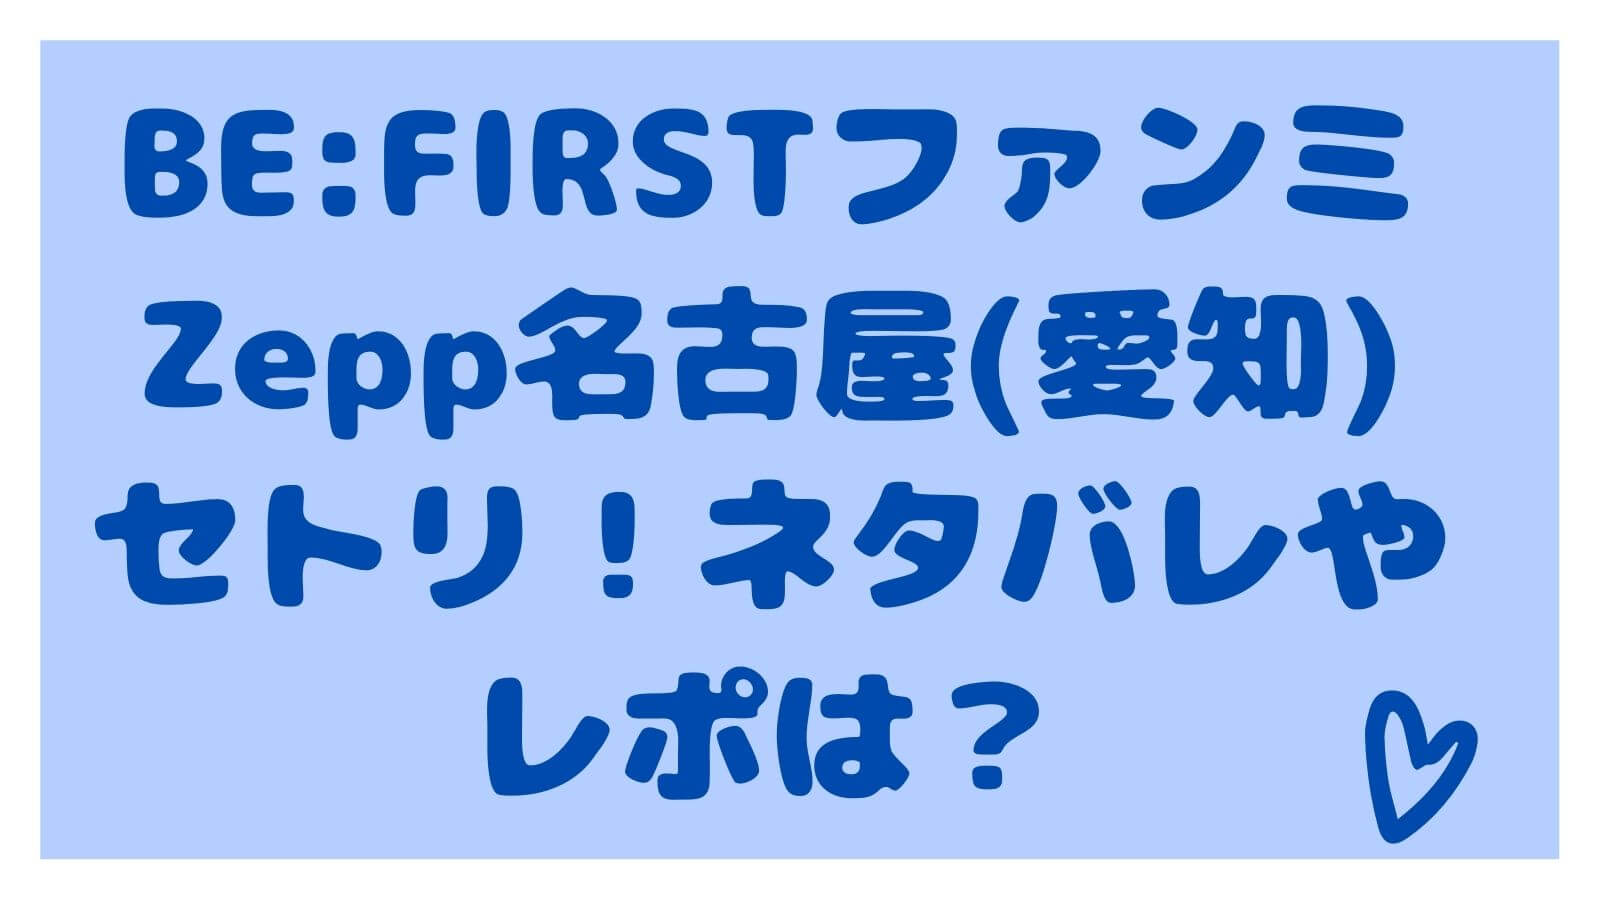 Be Firstファンミzepp名古屋 愛知 セトリ ネタバレやレポは しろくまポップミックスblog